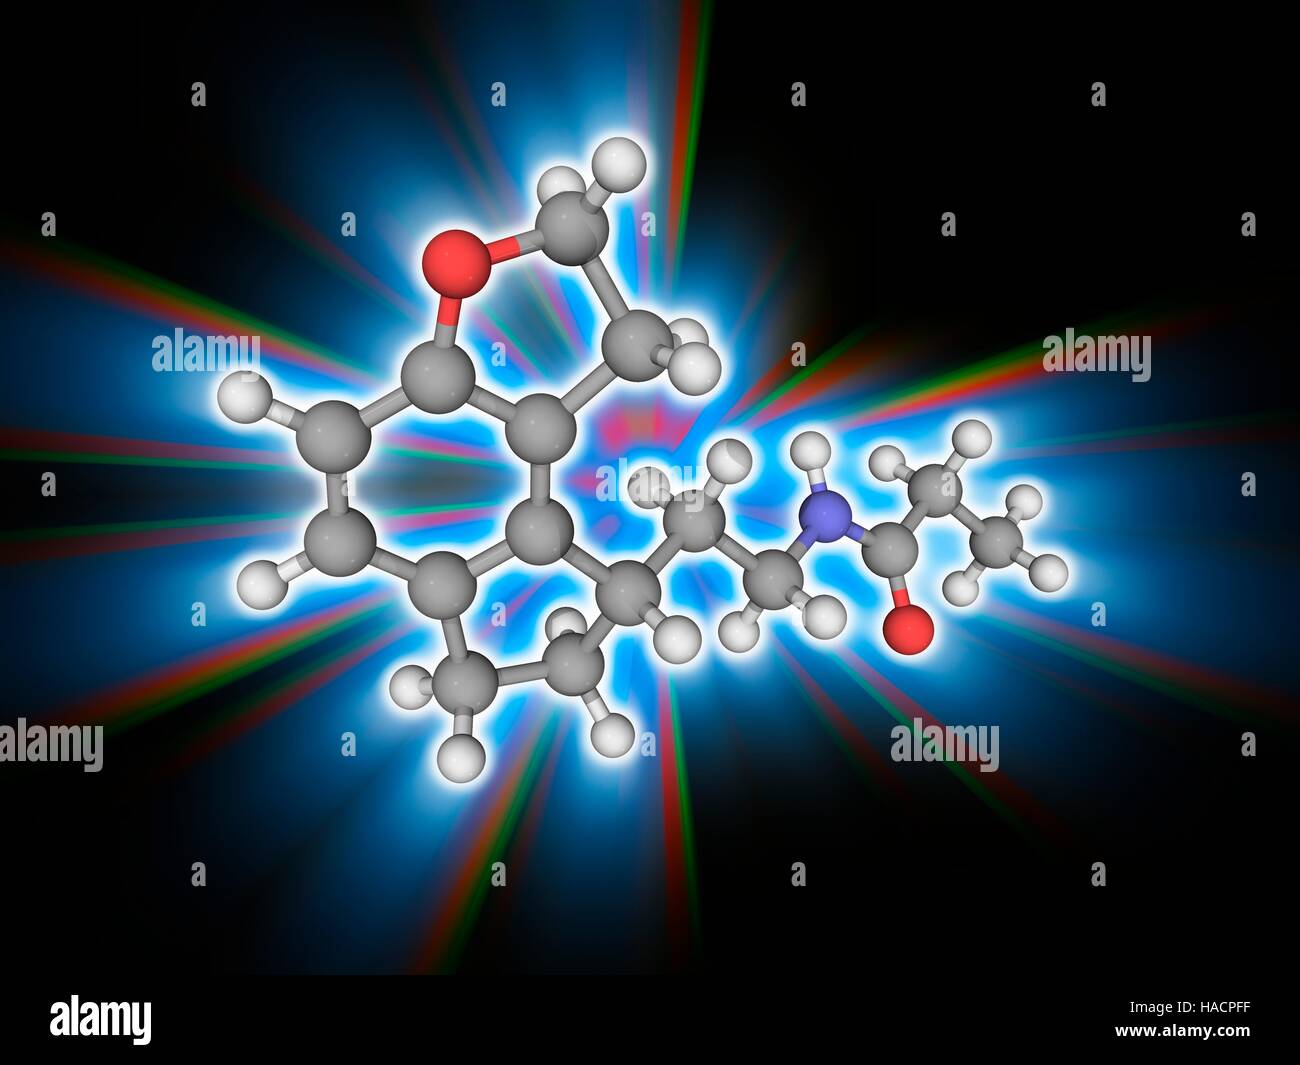 Ramelteon. Molekulares Modell des Medikaments Ramelteon (C16. H21. N.O2), eine Melatonin-Rezeptor-Agonisten und Benzofuran verwendet, um Schlaflosigkeit zu behandeln. Es ist als Rozerem vermarktet. Atome als Kugeln dargestellt werden und sind farblich gekennzeichnet: Kohlenstoff (grau), Wasserstoff (weiß), Stickstoff (blau) und Sauerstoff (rot). Abbildung. Stockfoto